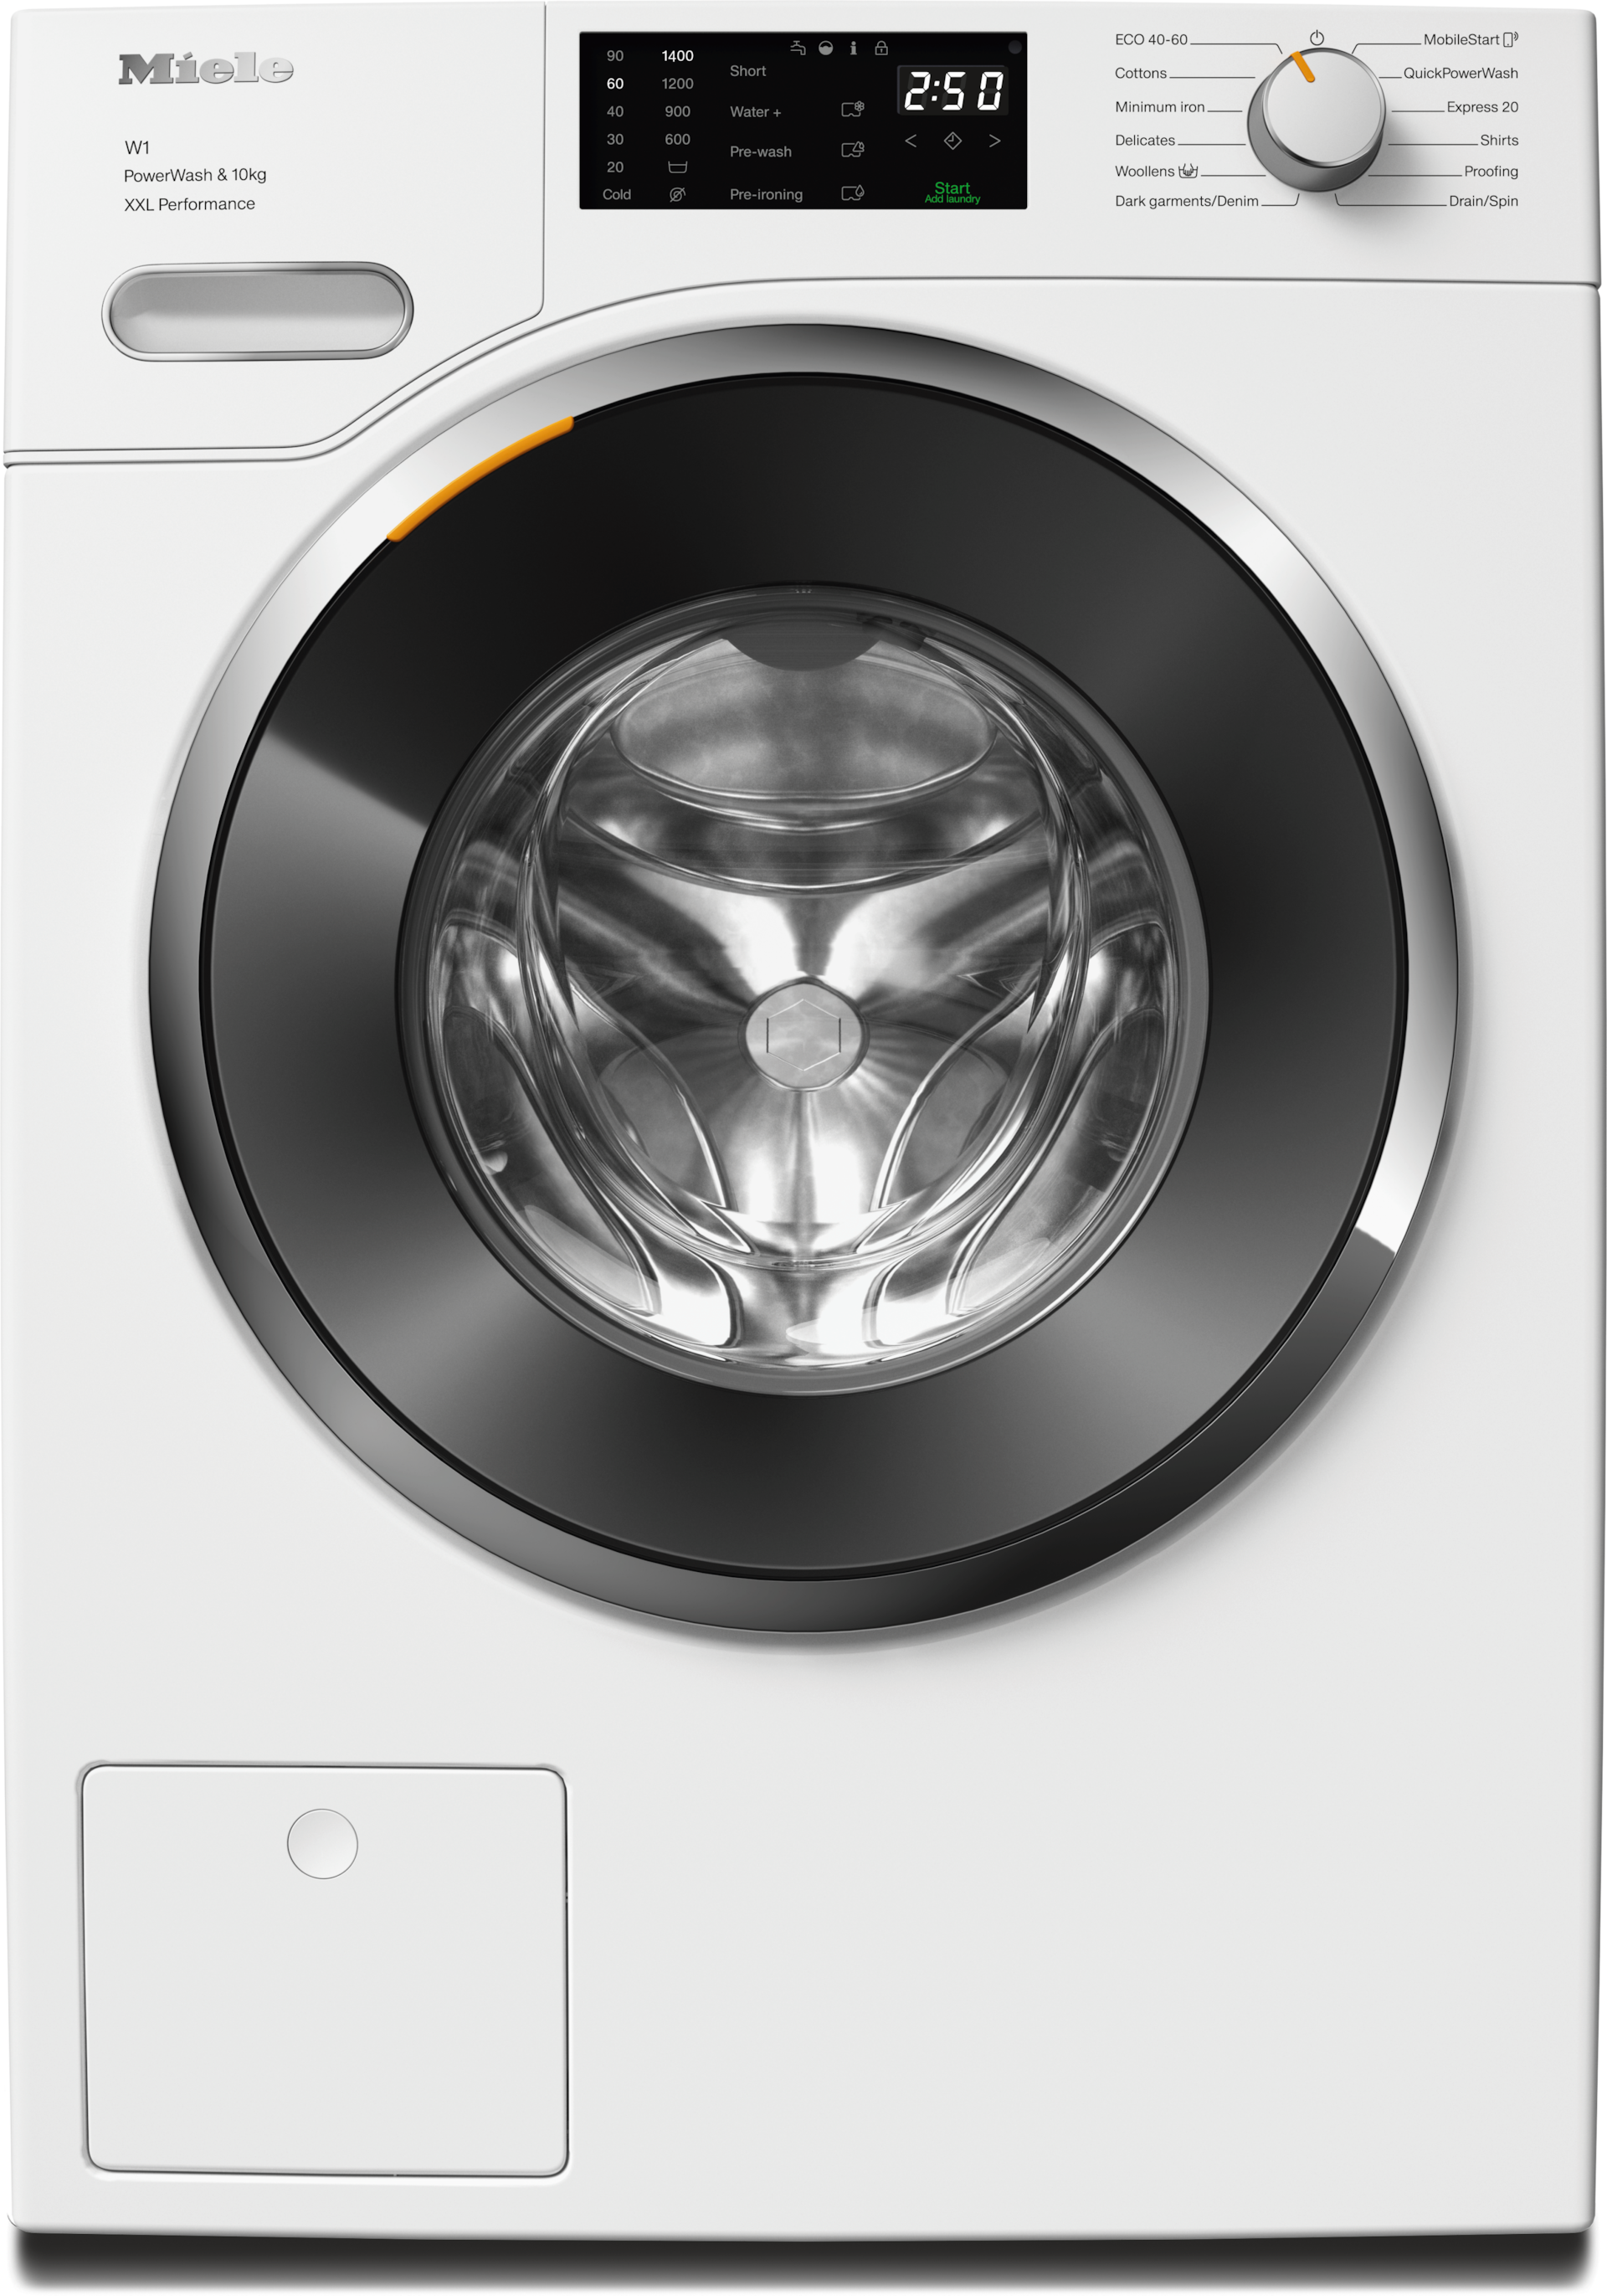 Washing machines - WWK360 WCS PWash&10kg - 1